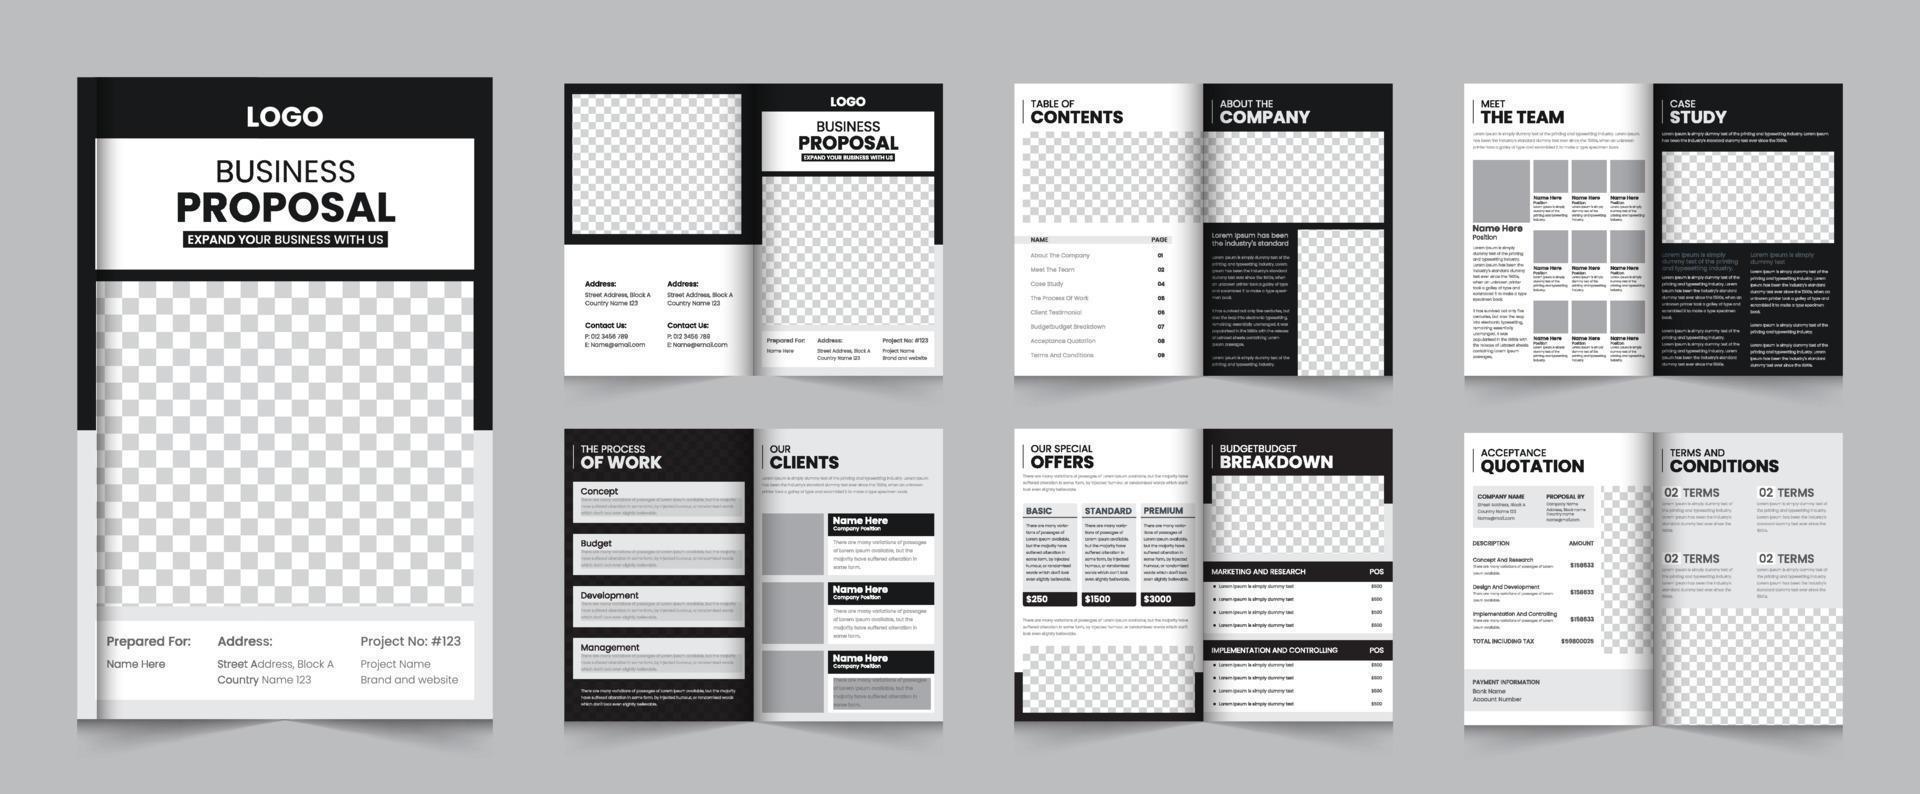 folleto de propuesta comercial creativa o diseño de plantilla de diseño de propuesta comercial a4 vector